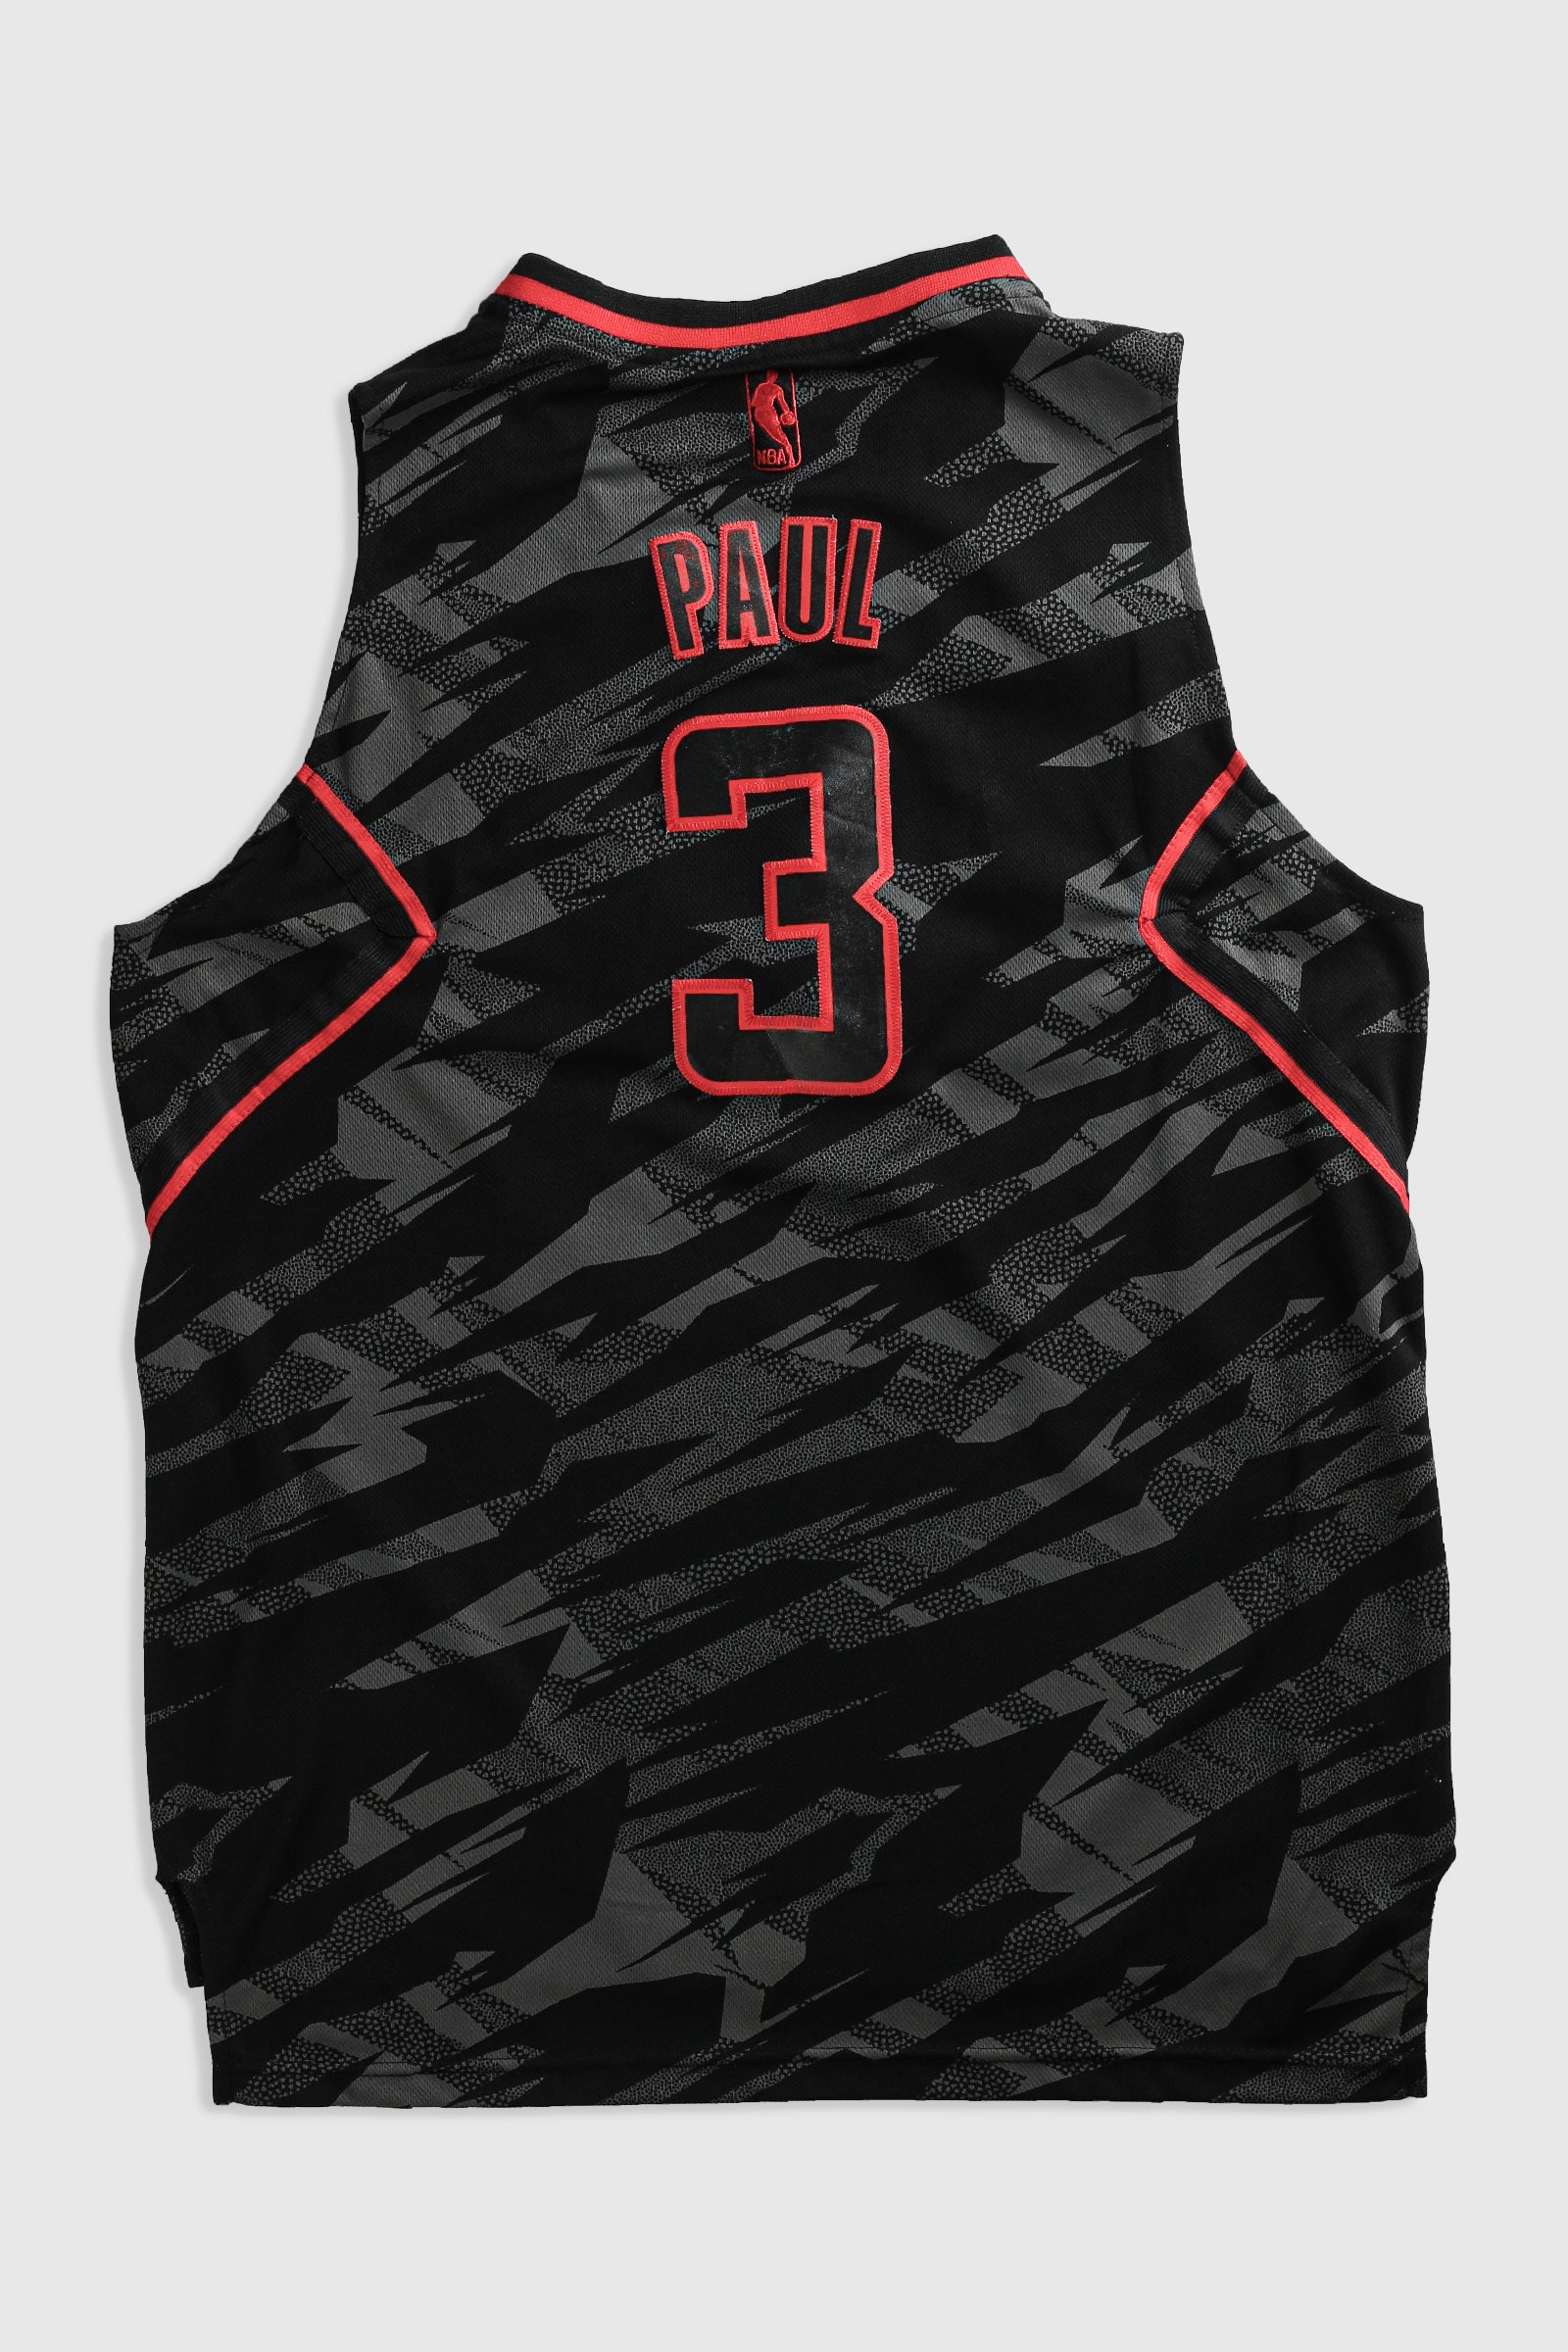 NBA Store  Basketball jersey, Jersey design, Sports jersey design